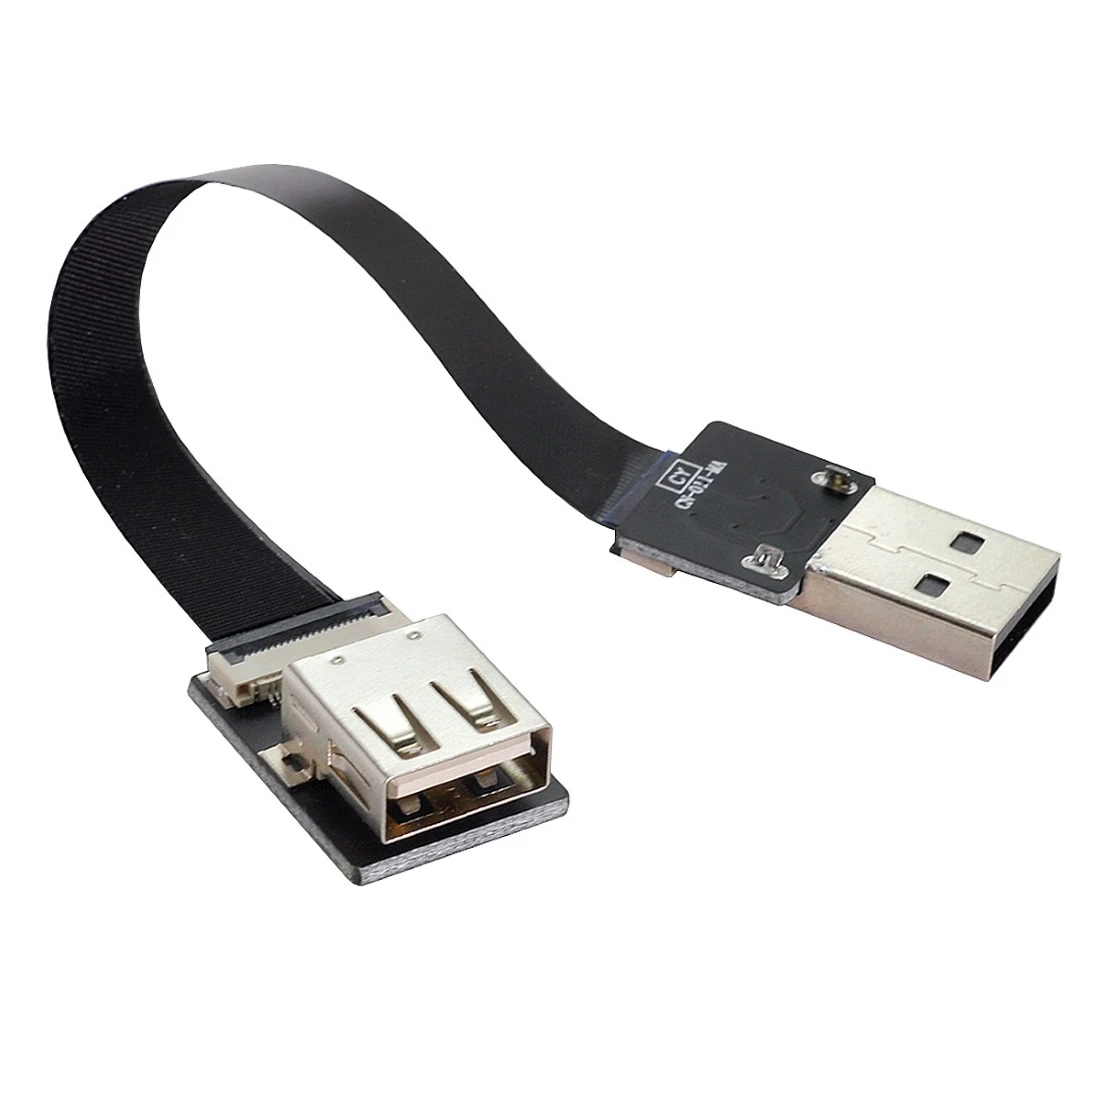 

Удлинитель для передачи данных CY Xiwai Type-A USB 2,0 «штырь-гнездо», плоский тонкий кабель FPC для FPV, диска, сканера и принтера